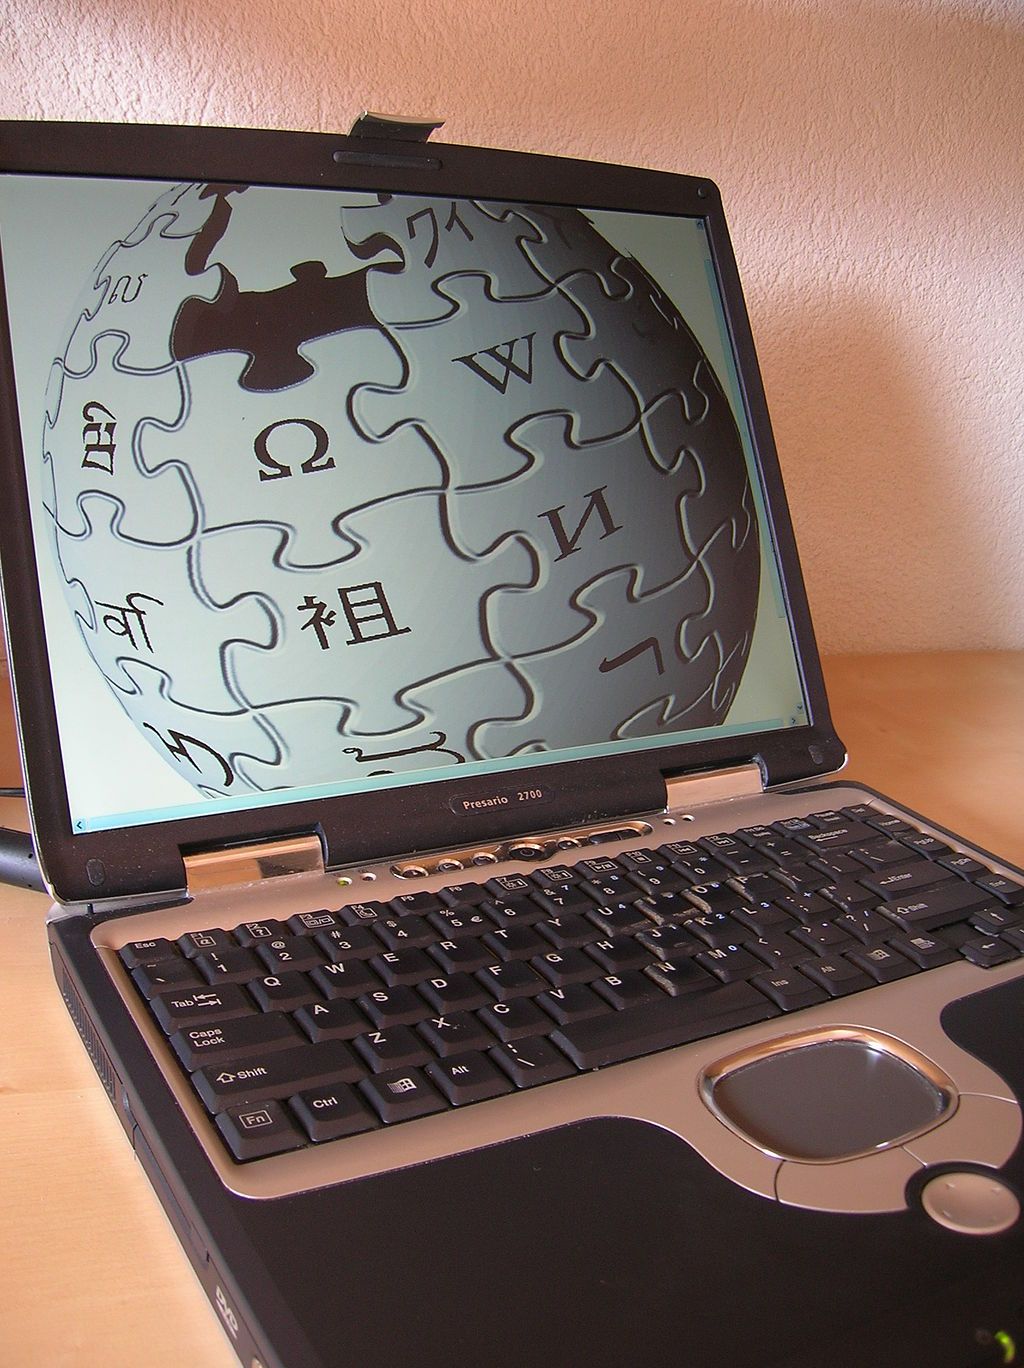 27 августа 1993 года <i>Compaq </i>объявила о выпуске серии компьютеров <i>Presario</i>